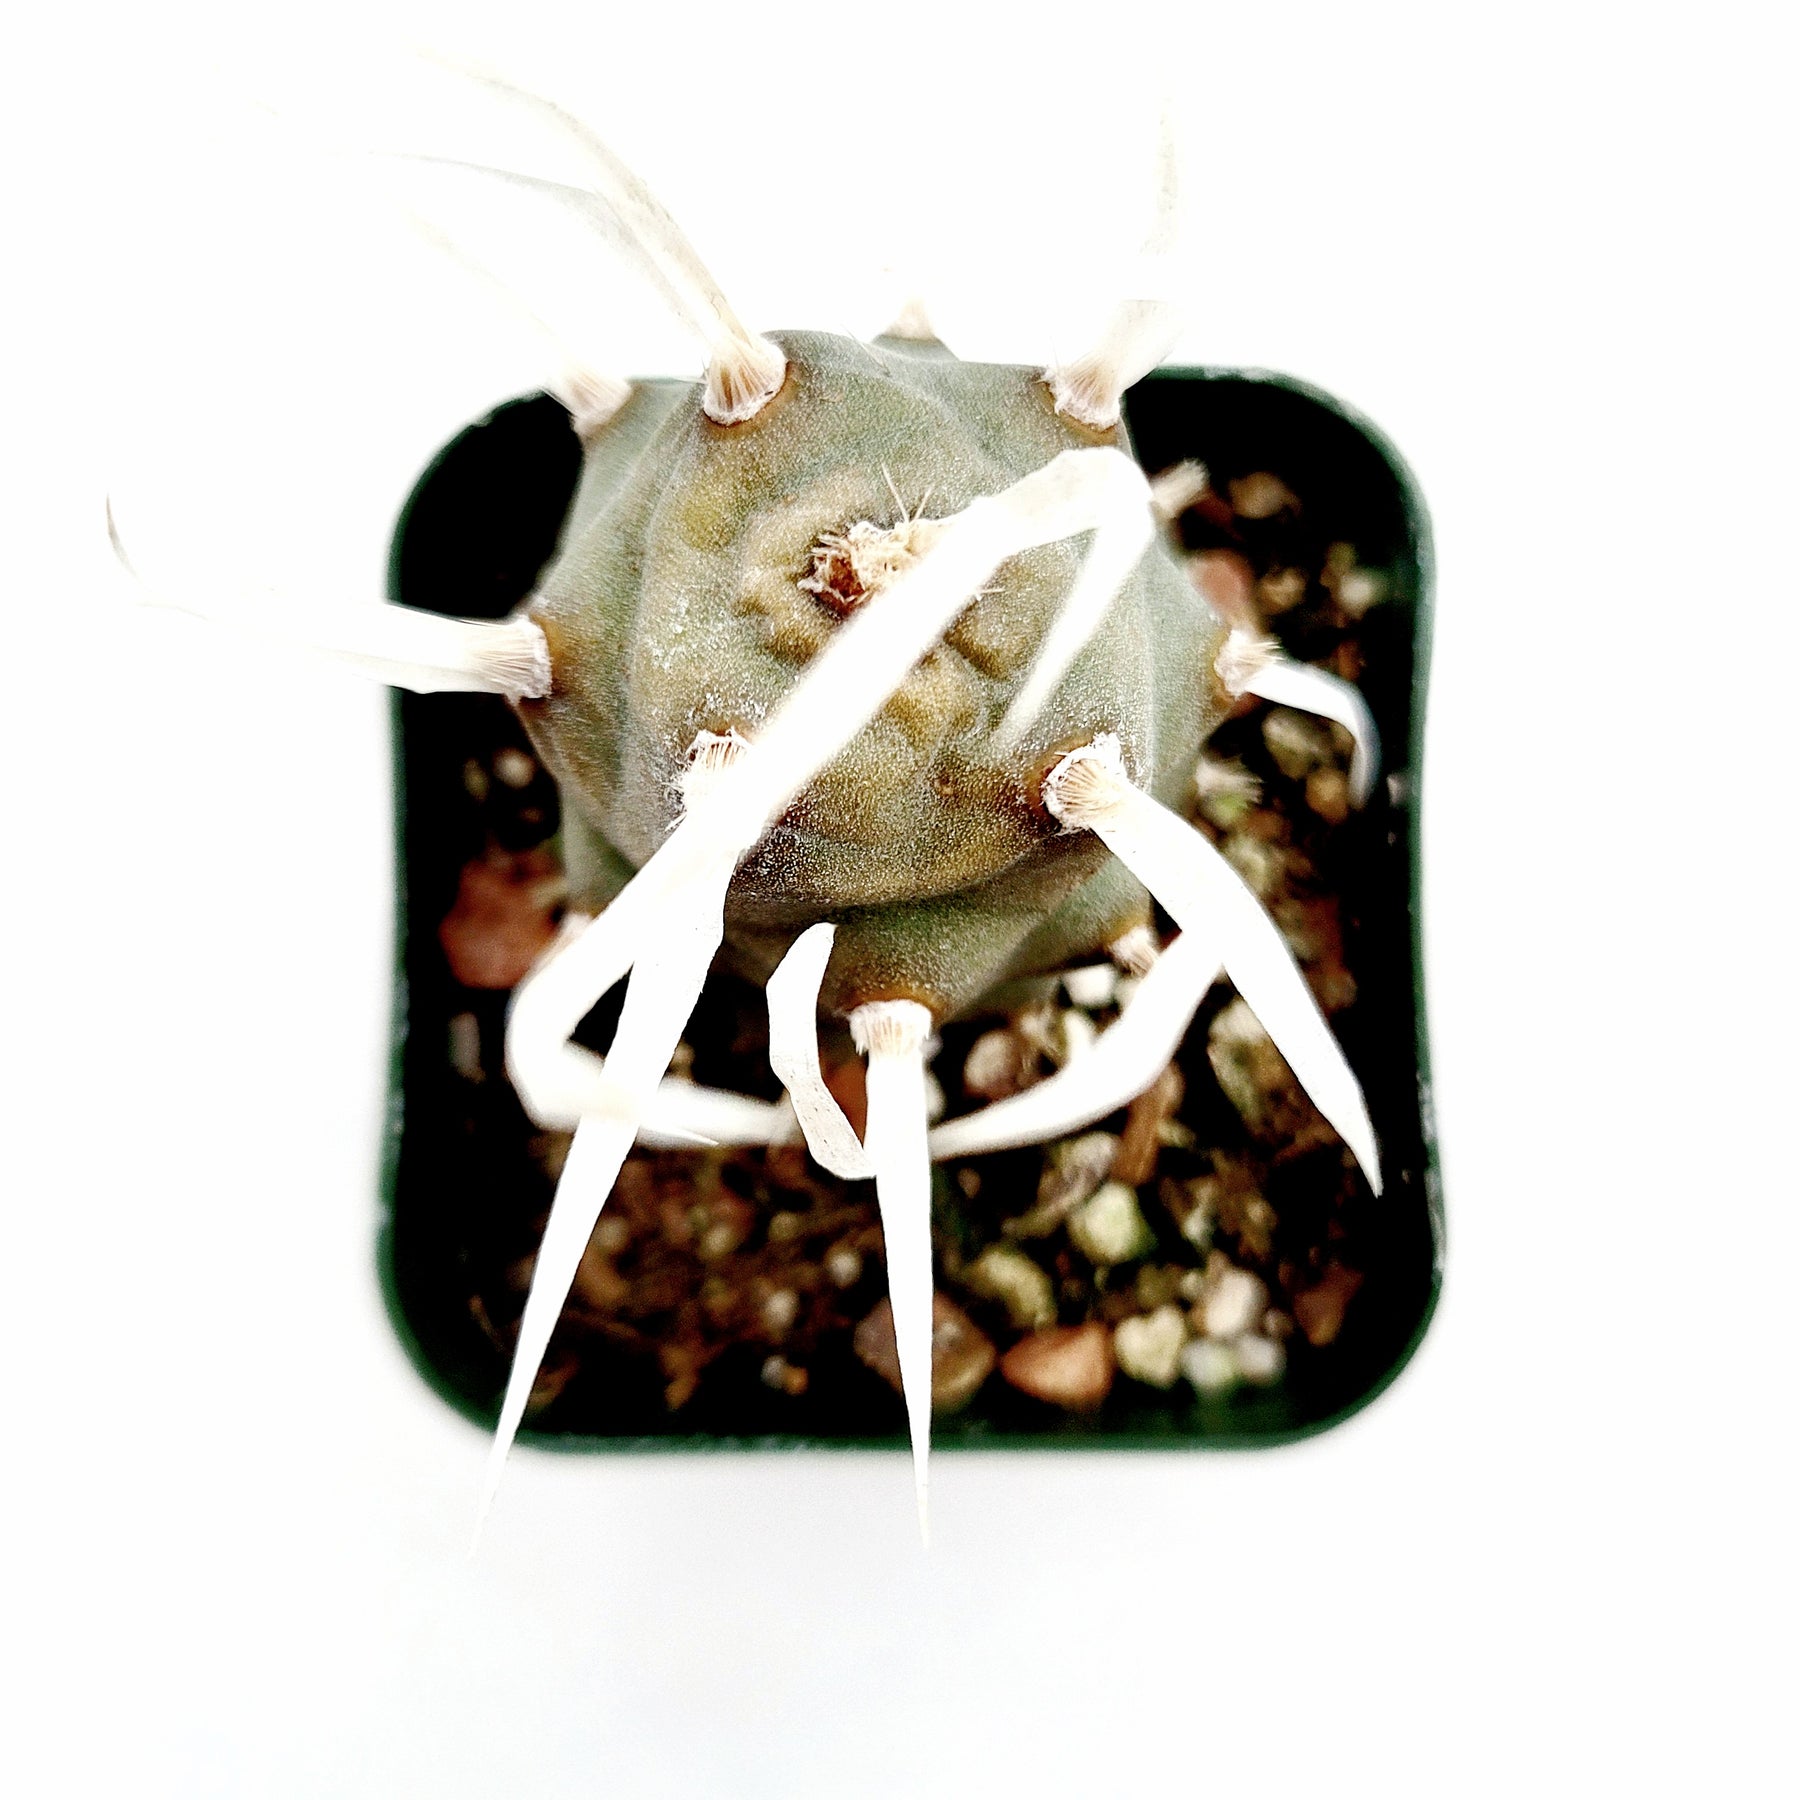 Tephrocactus articulatus 'Paper Spine Cactus'